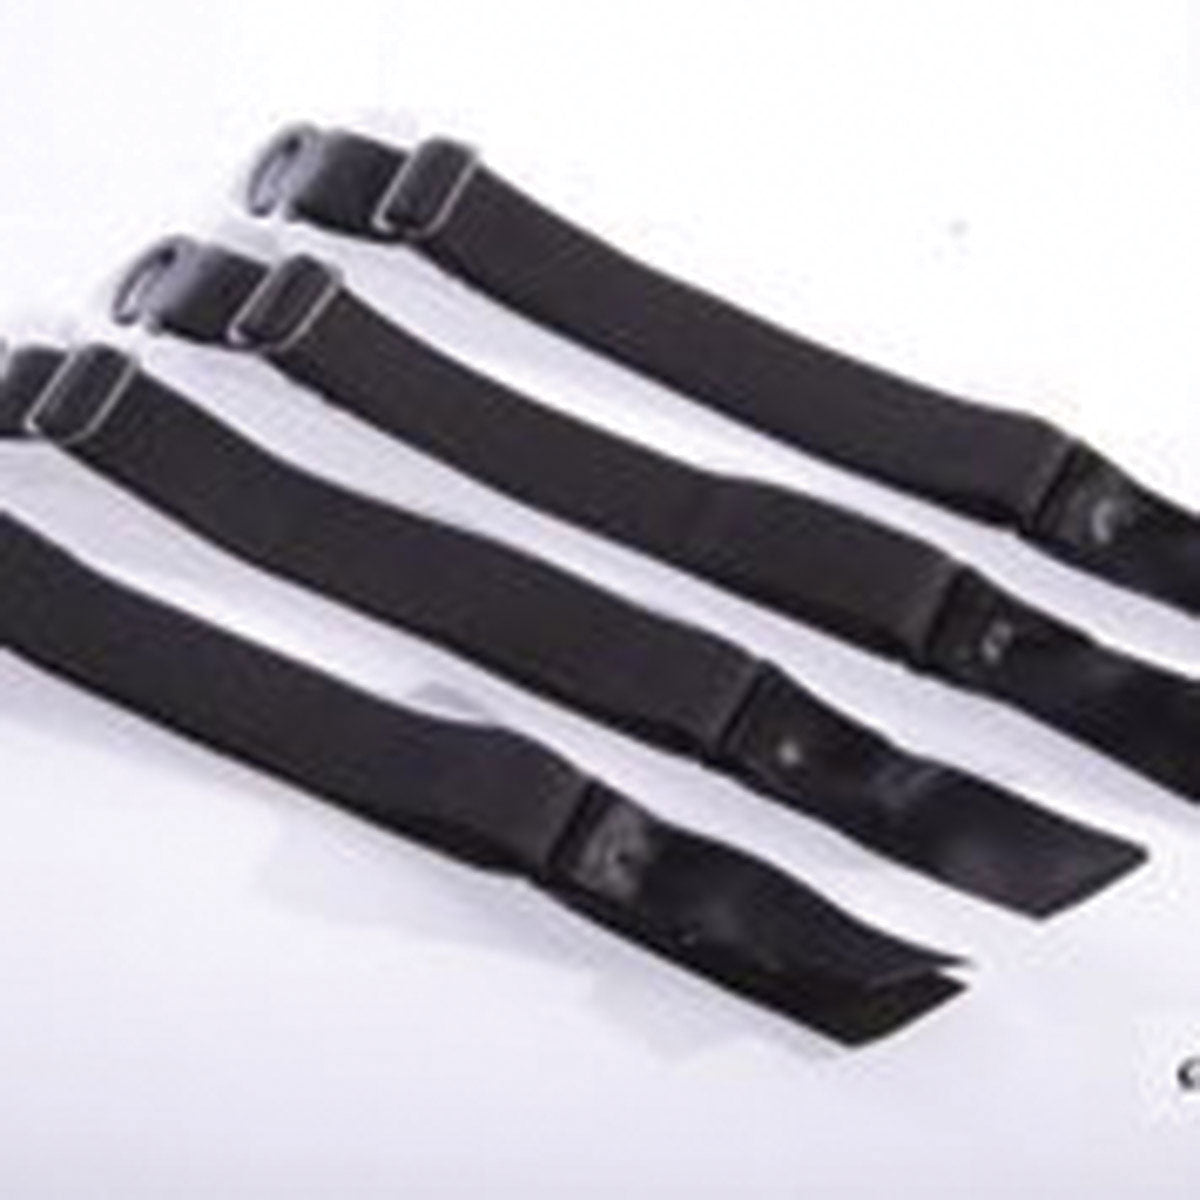 SpareParts Hardwear Removeable Garter Set - Black (set of 4)